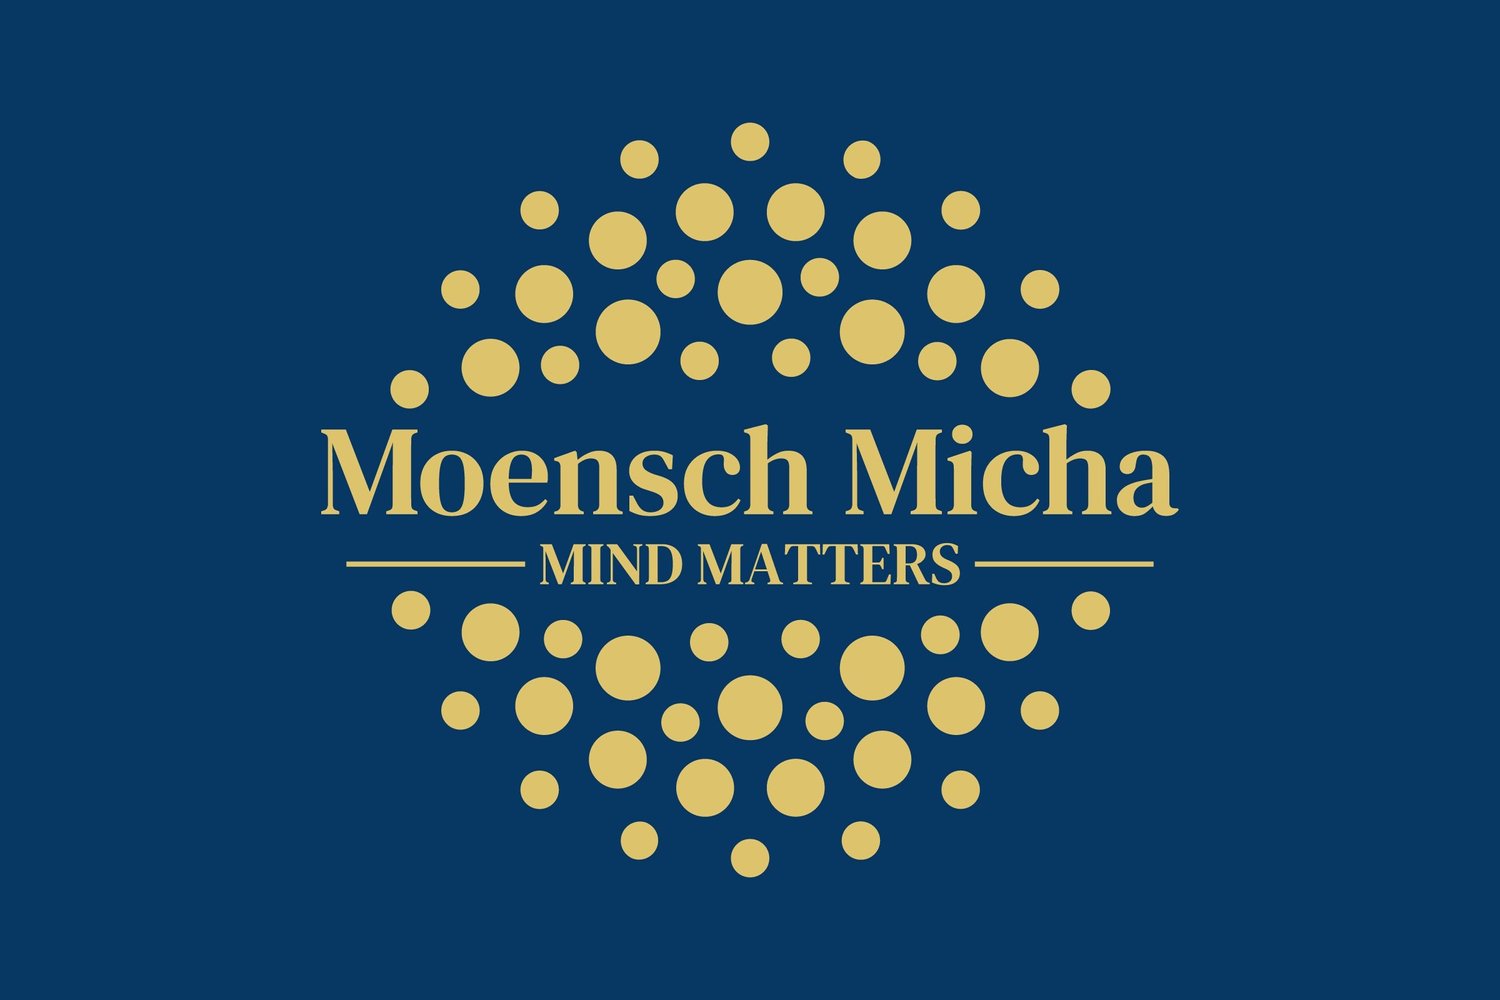 Moensch Micha - Mind Matters